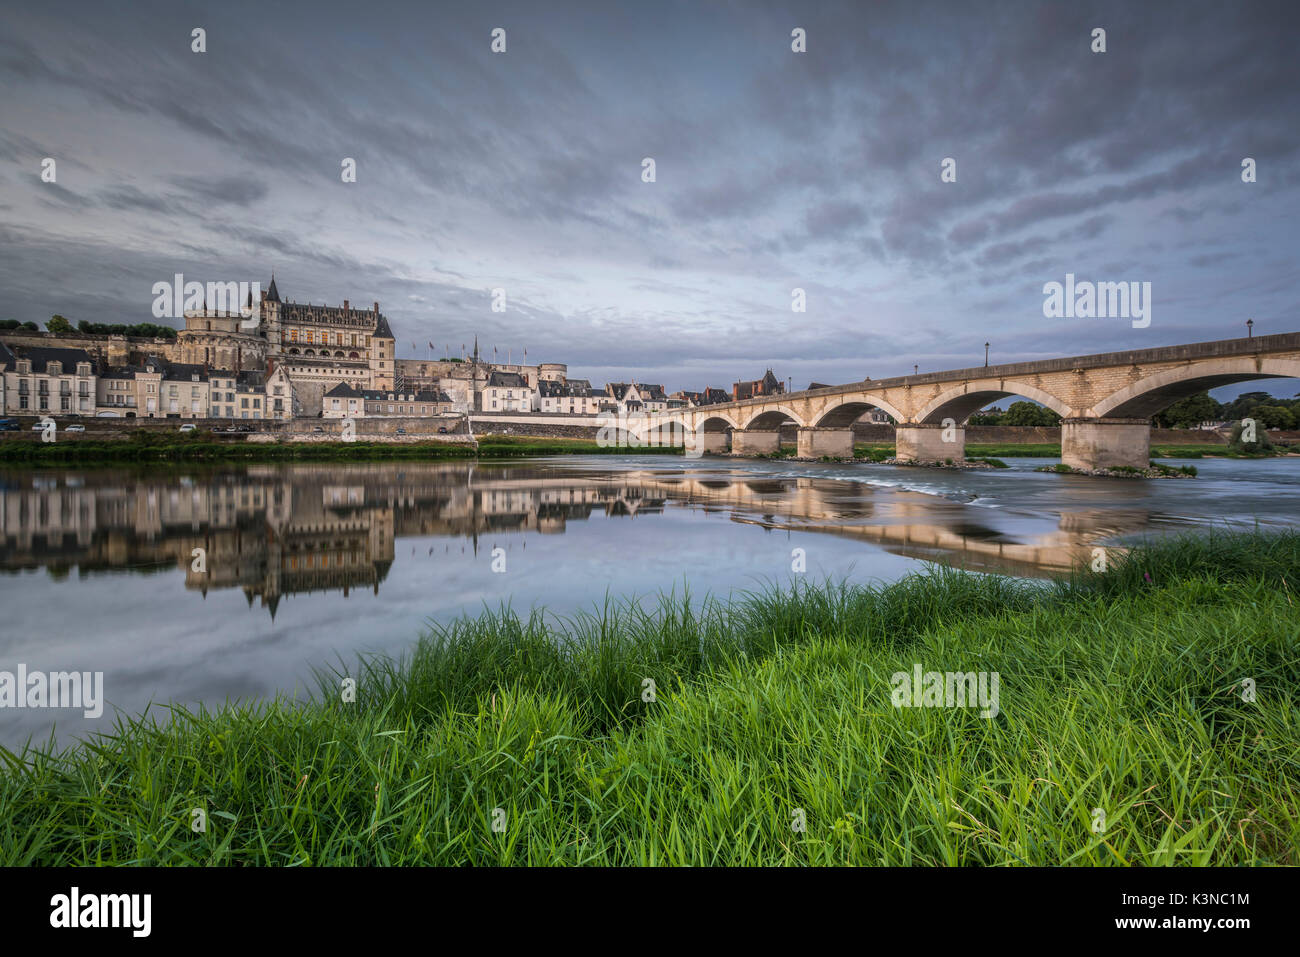 Castle and bridge reflection. Amboise, Indre-et-Loire, France. Stock Photo